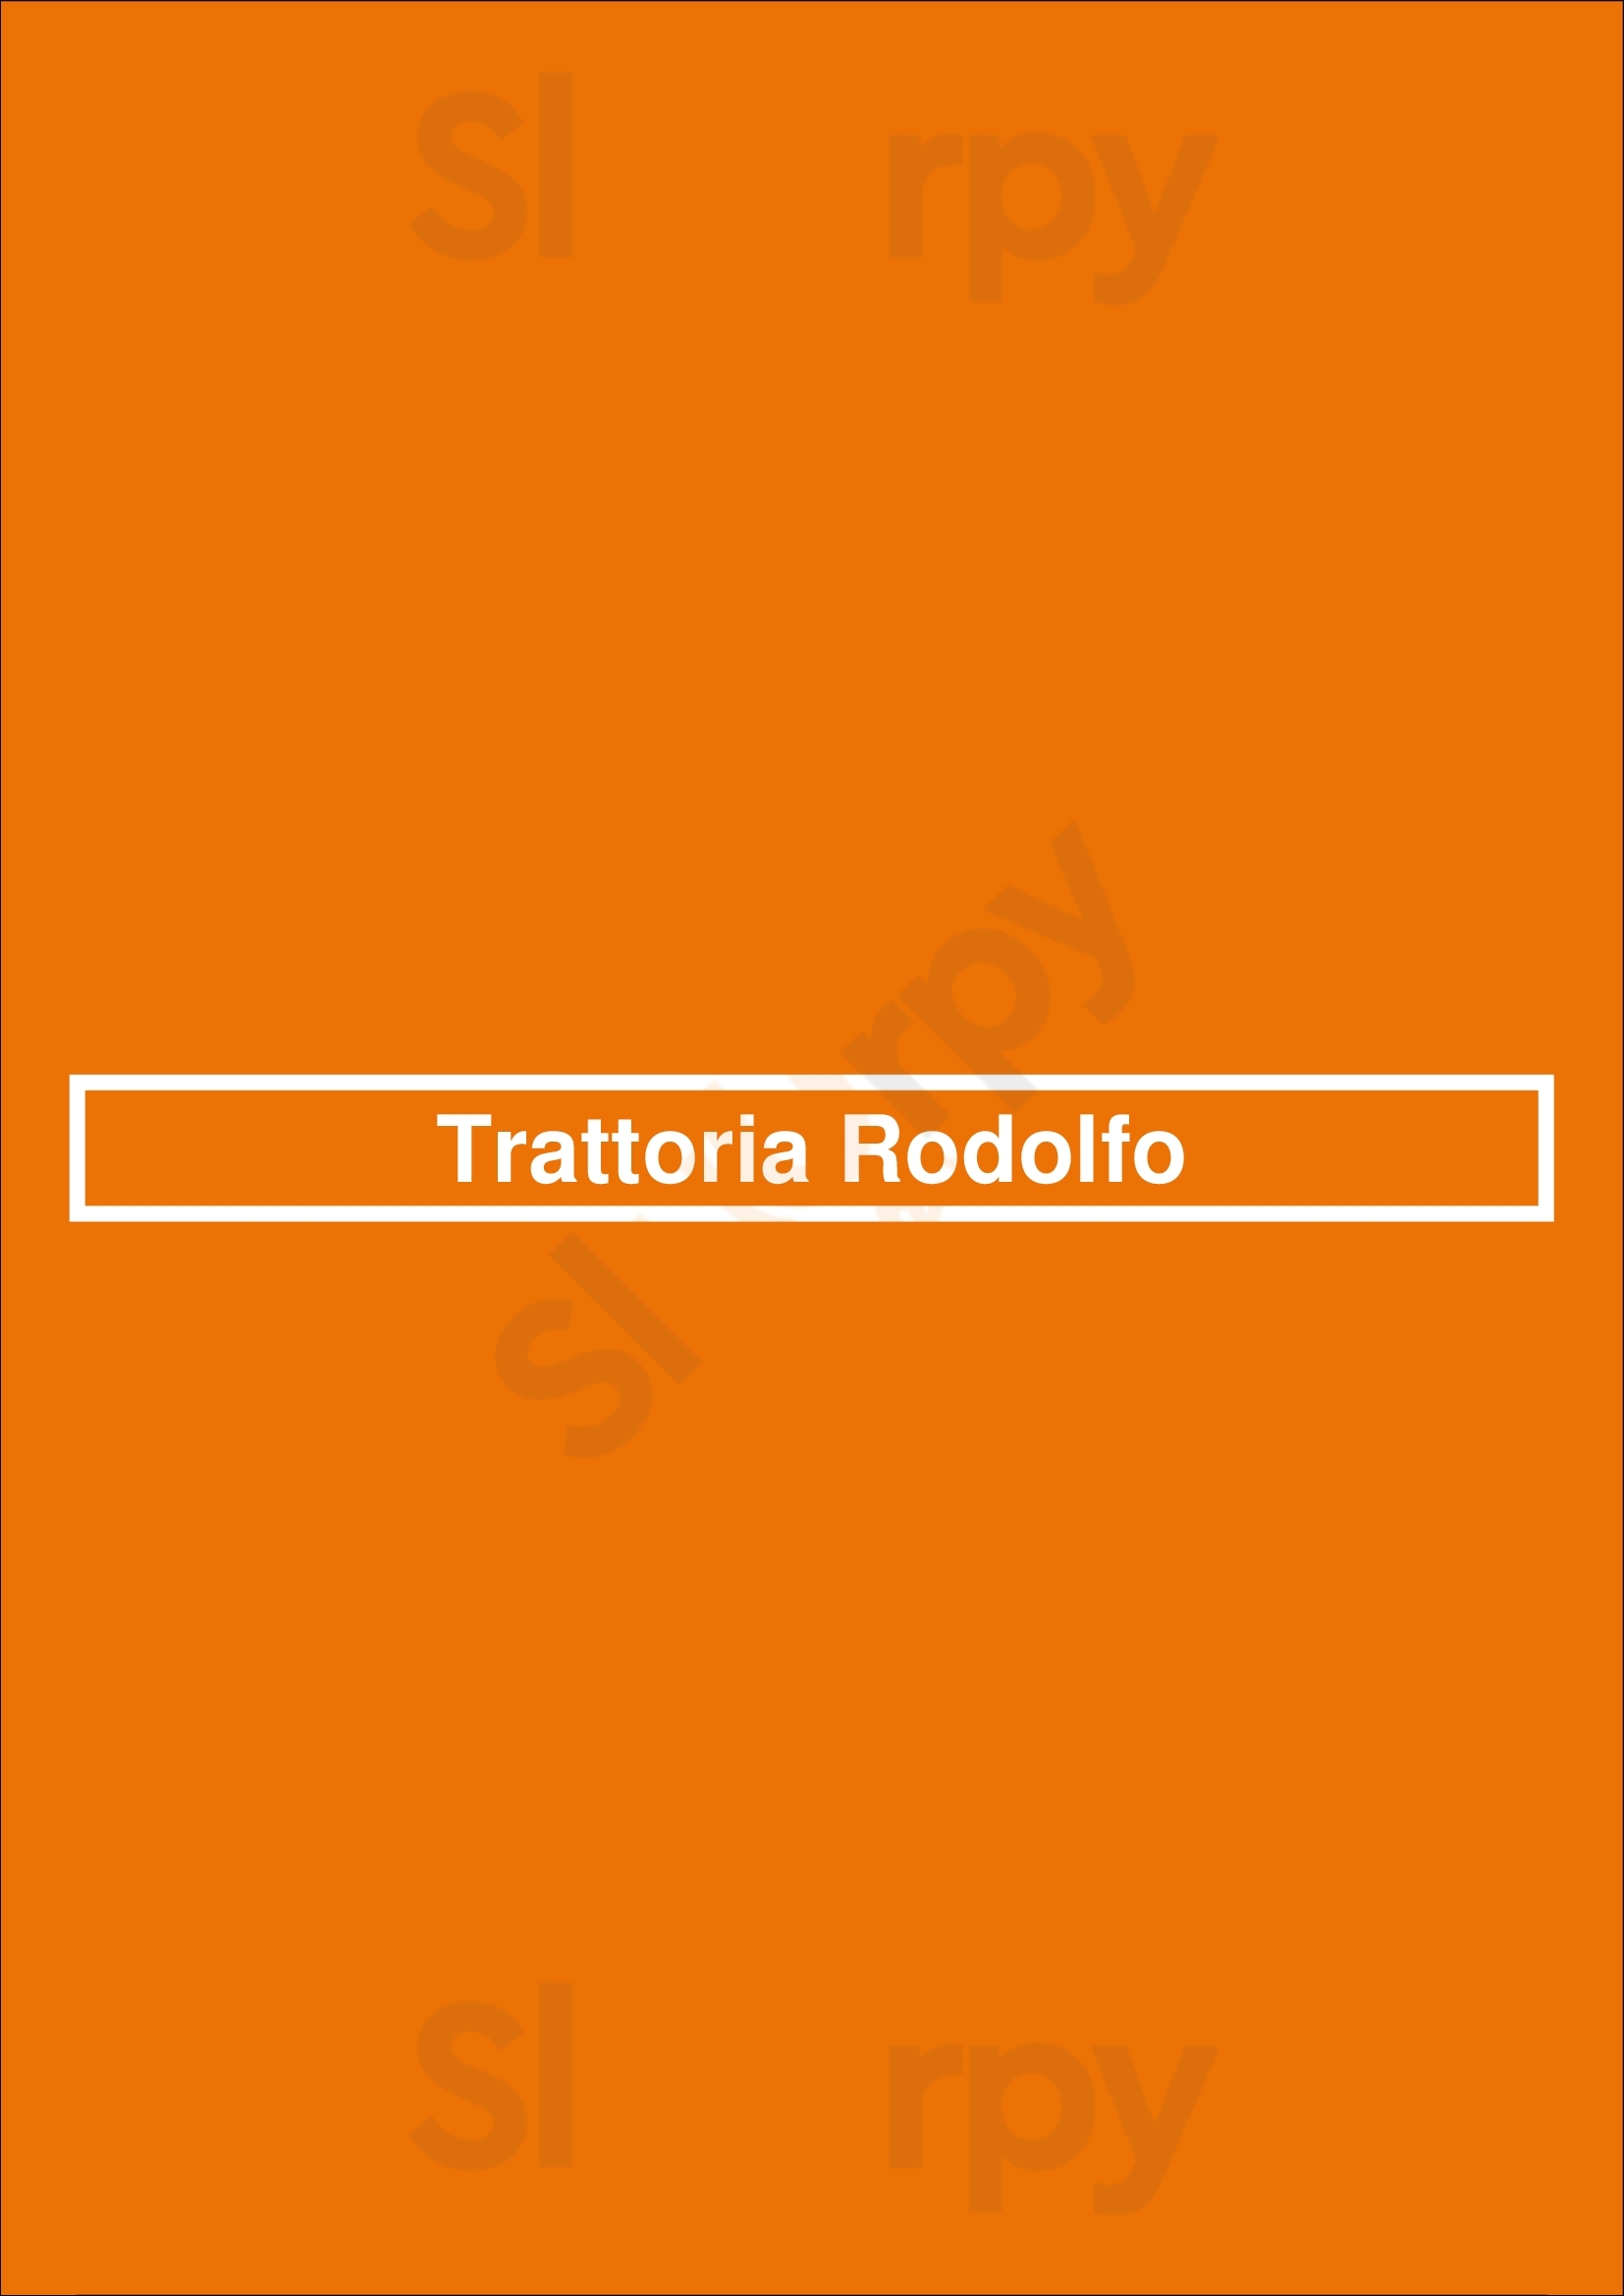 Trattoria Rodolfo Nootdorp Menu - 1